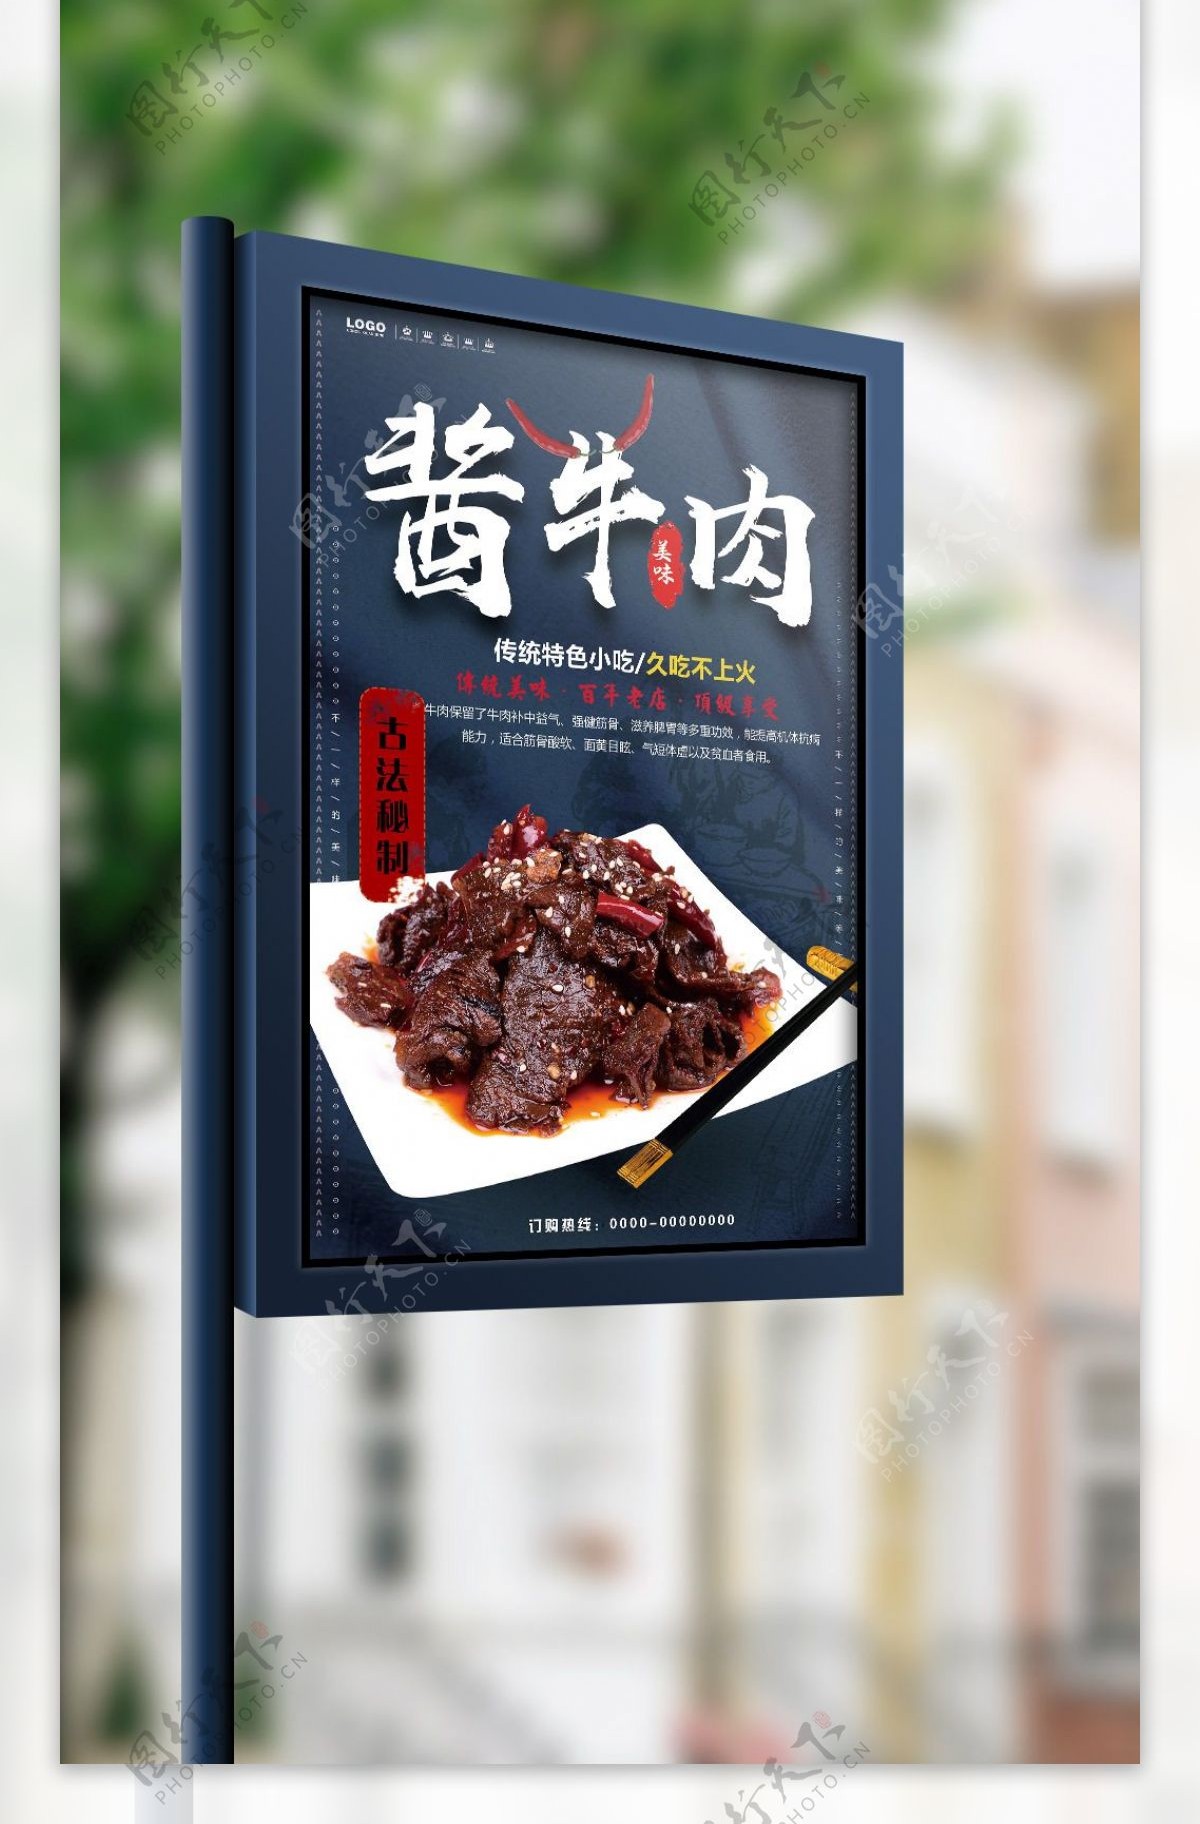 创意中国风美食酱牛肉小吃宣传海报